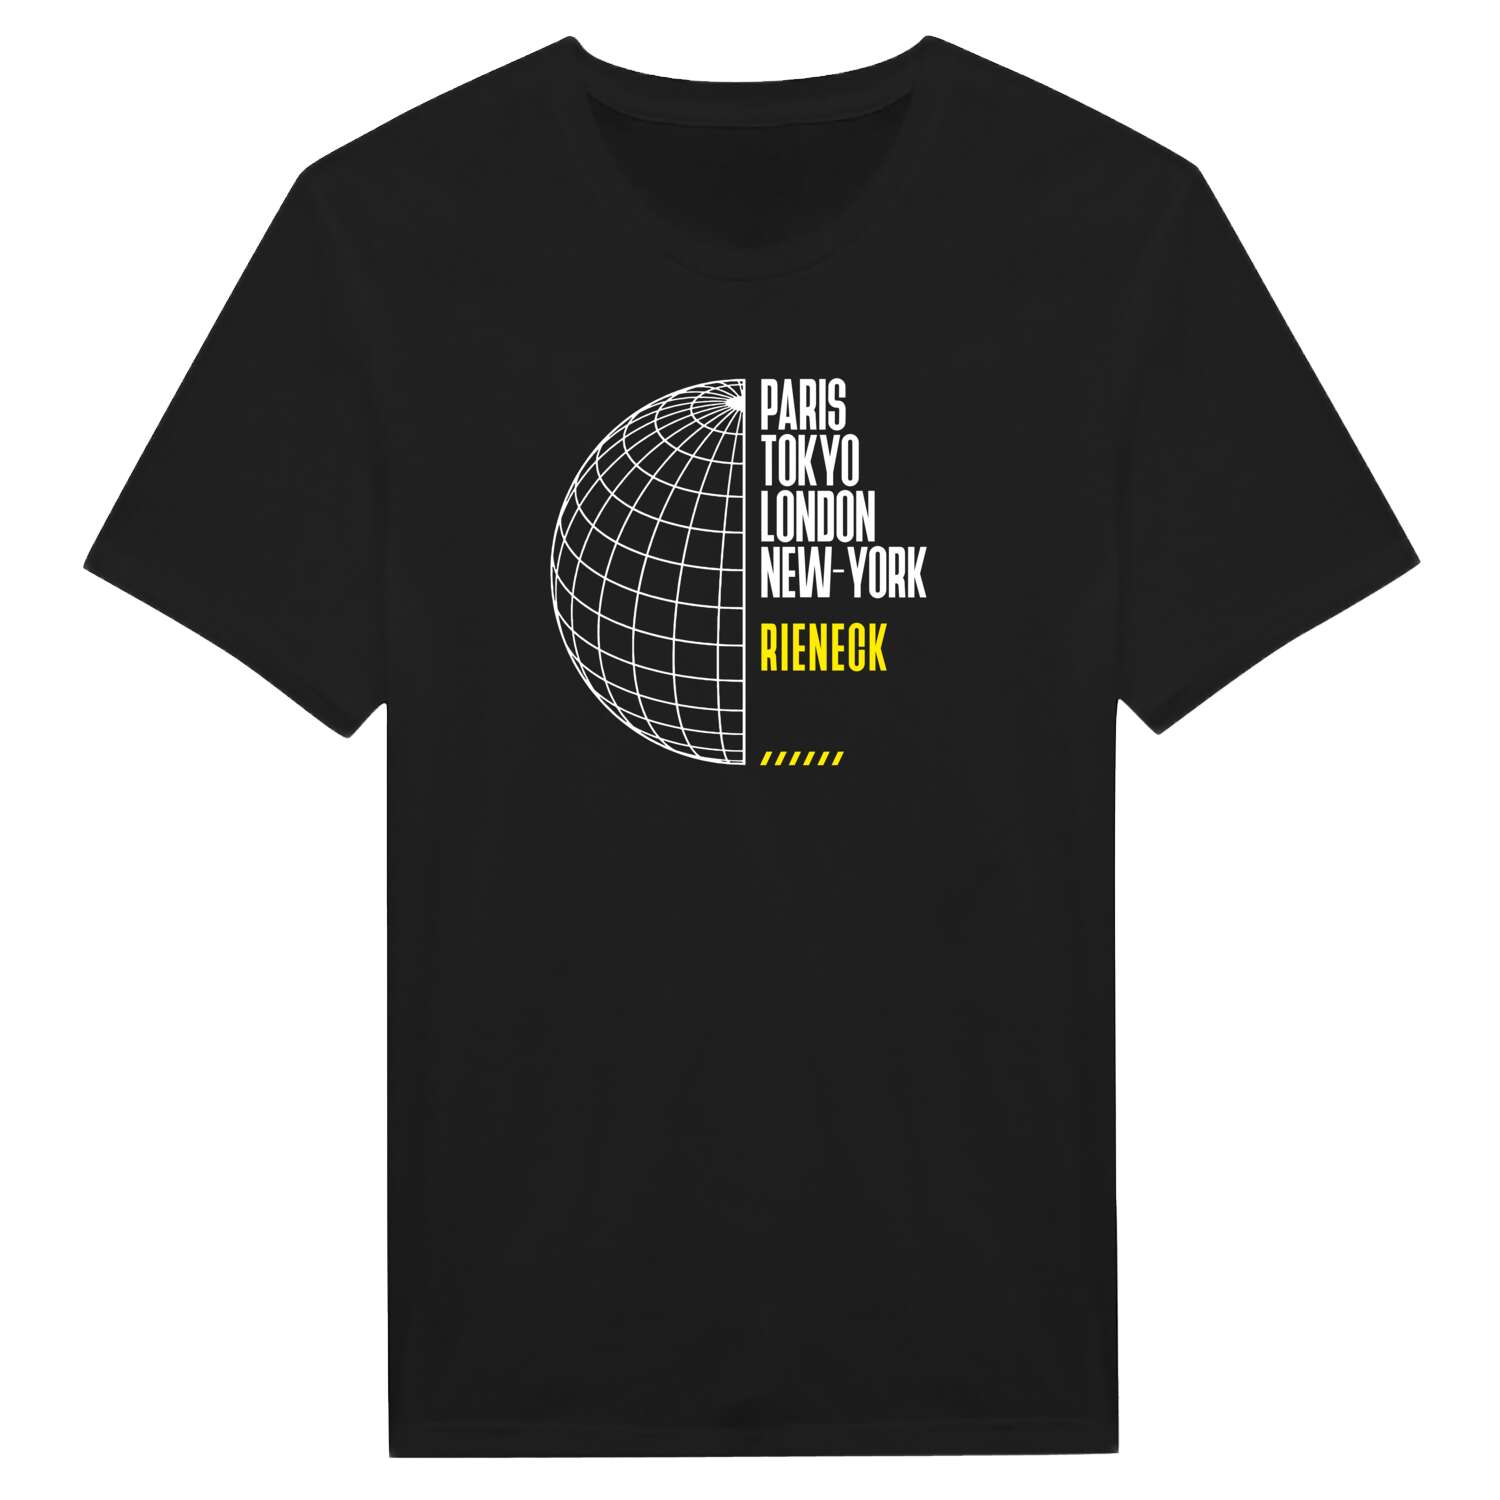 Rieneck T-Shirt »Paris Tokyo London«